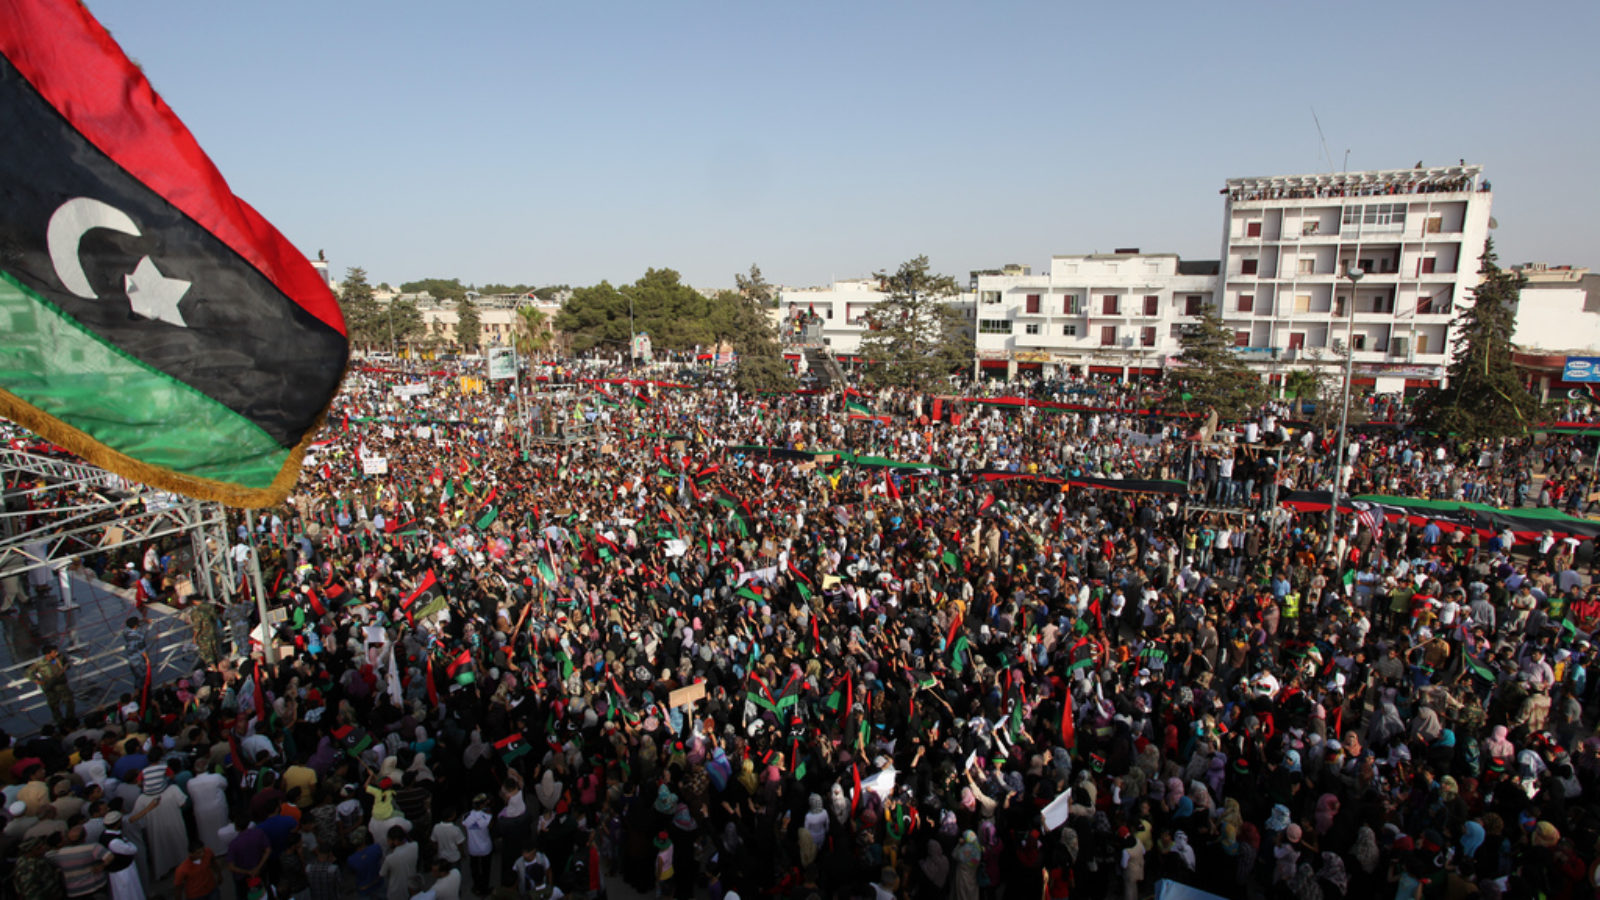 Demonstration in Libya